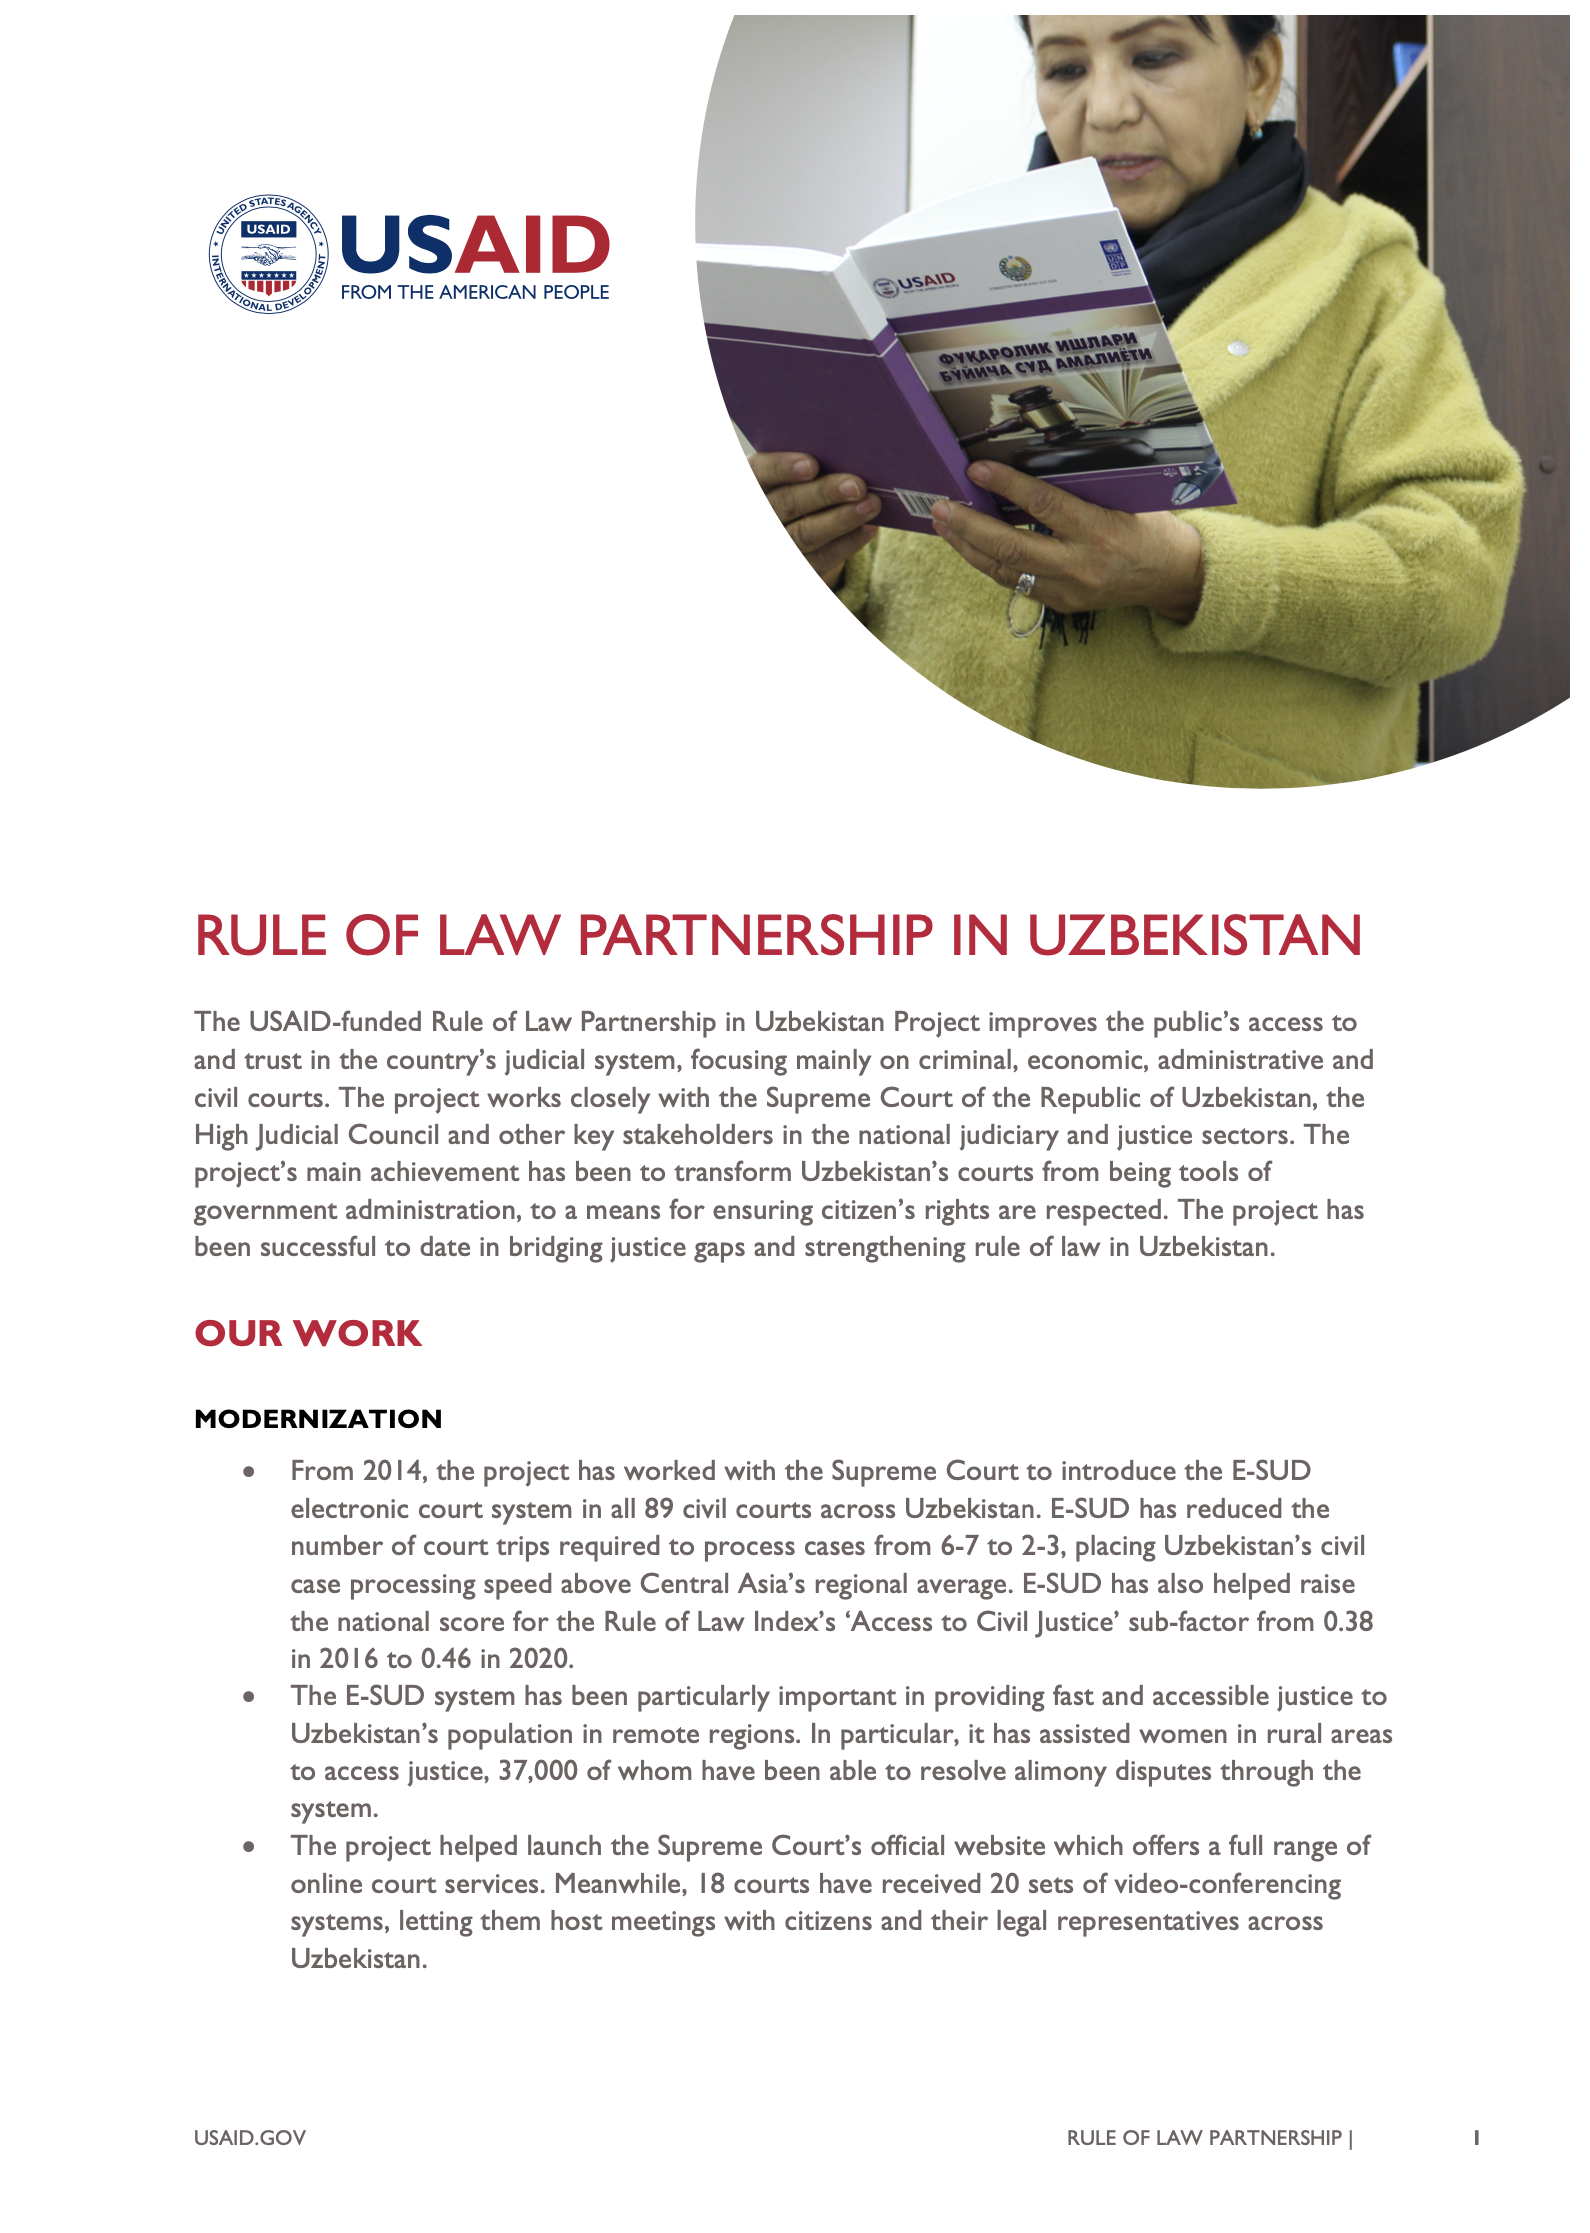 Rule of Law Partnership In Uzbekistan